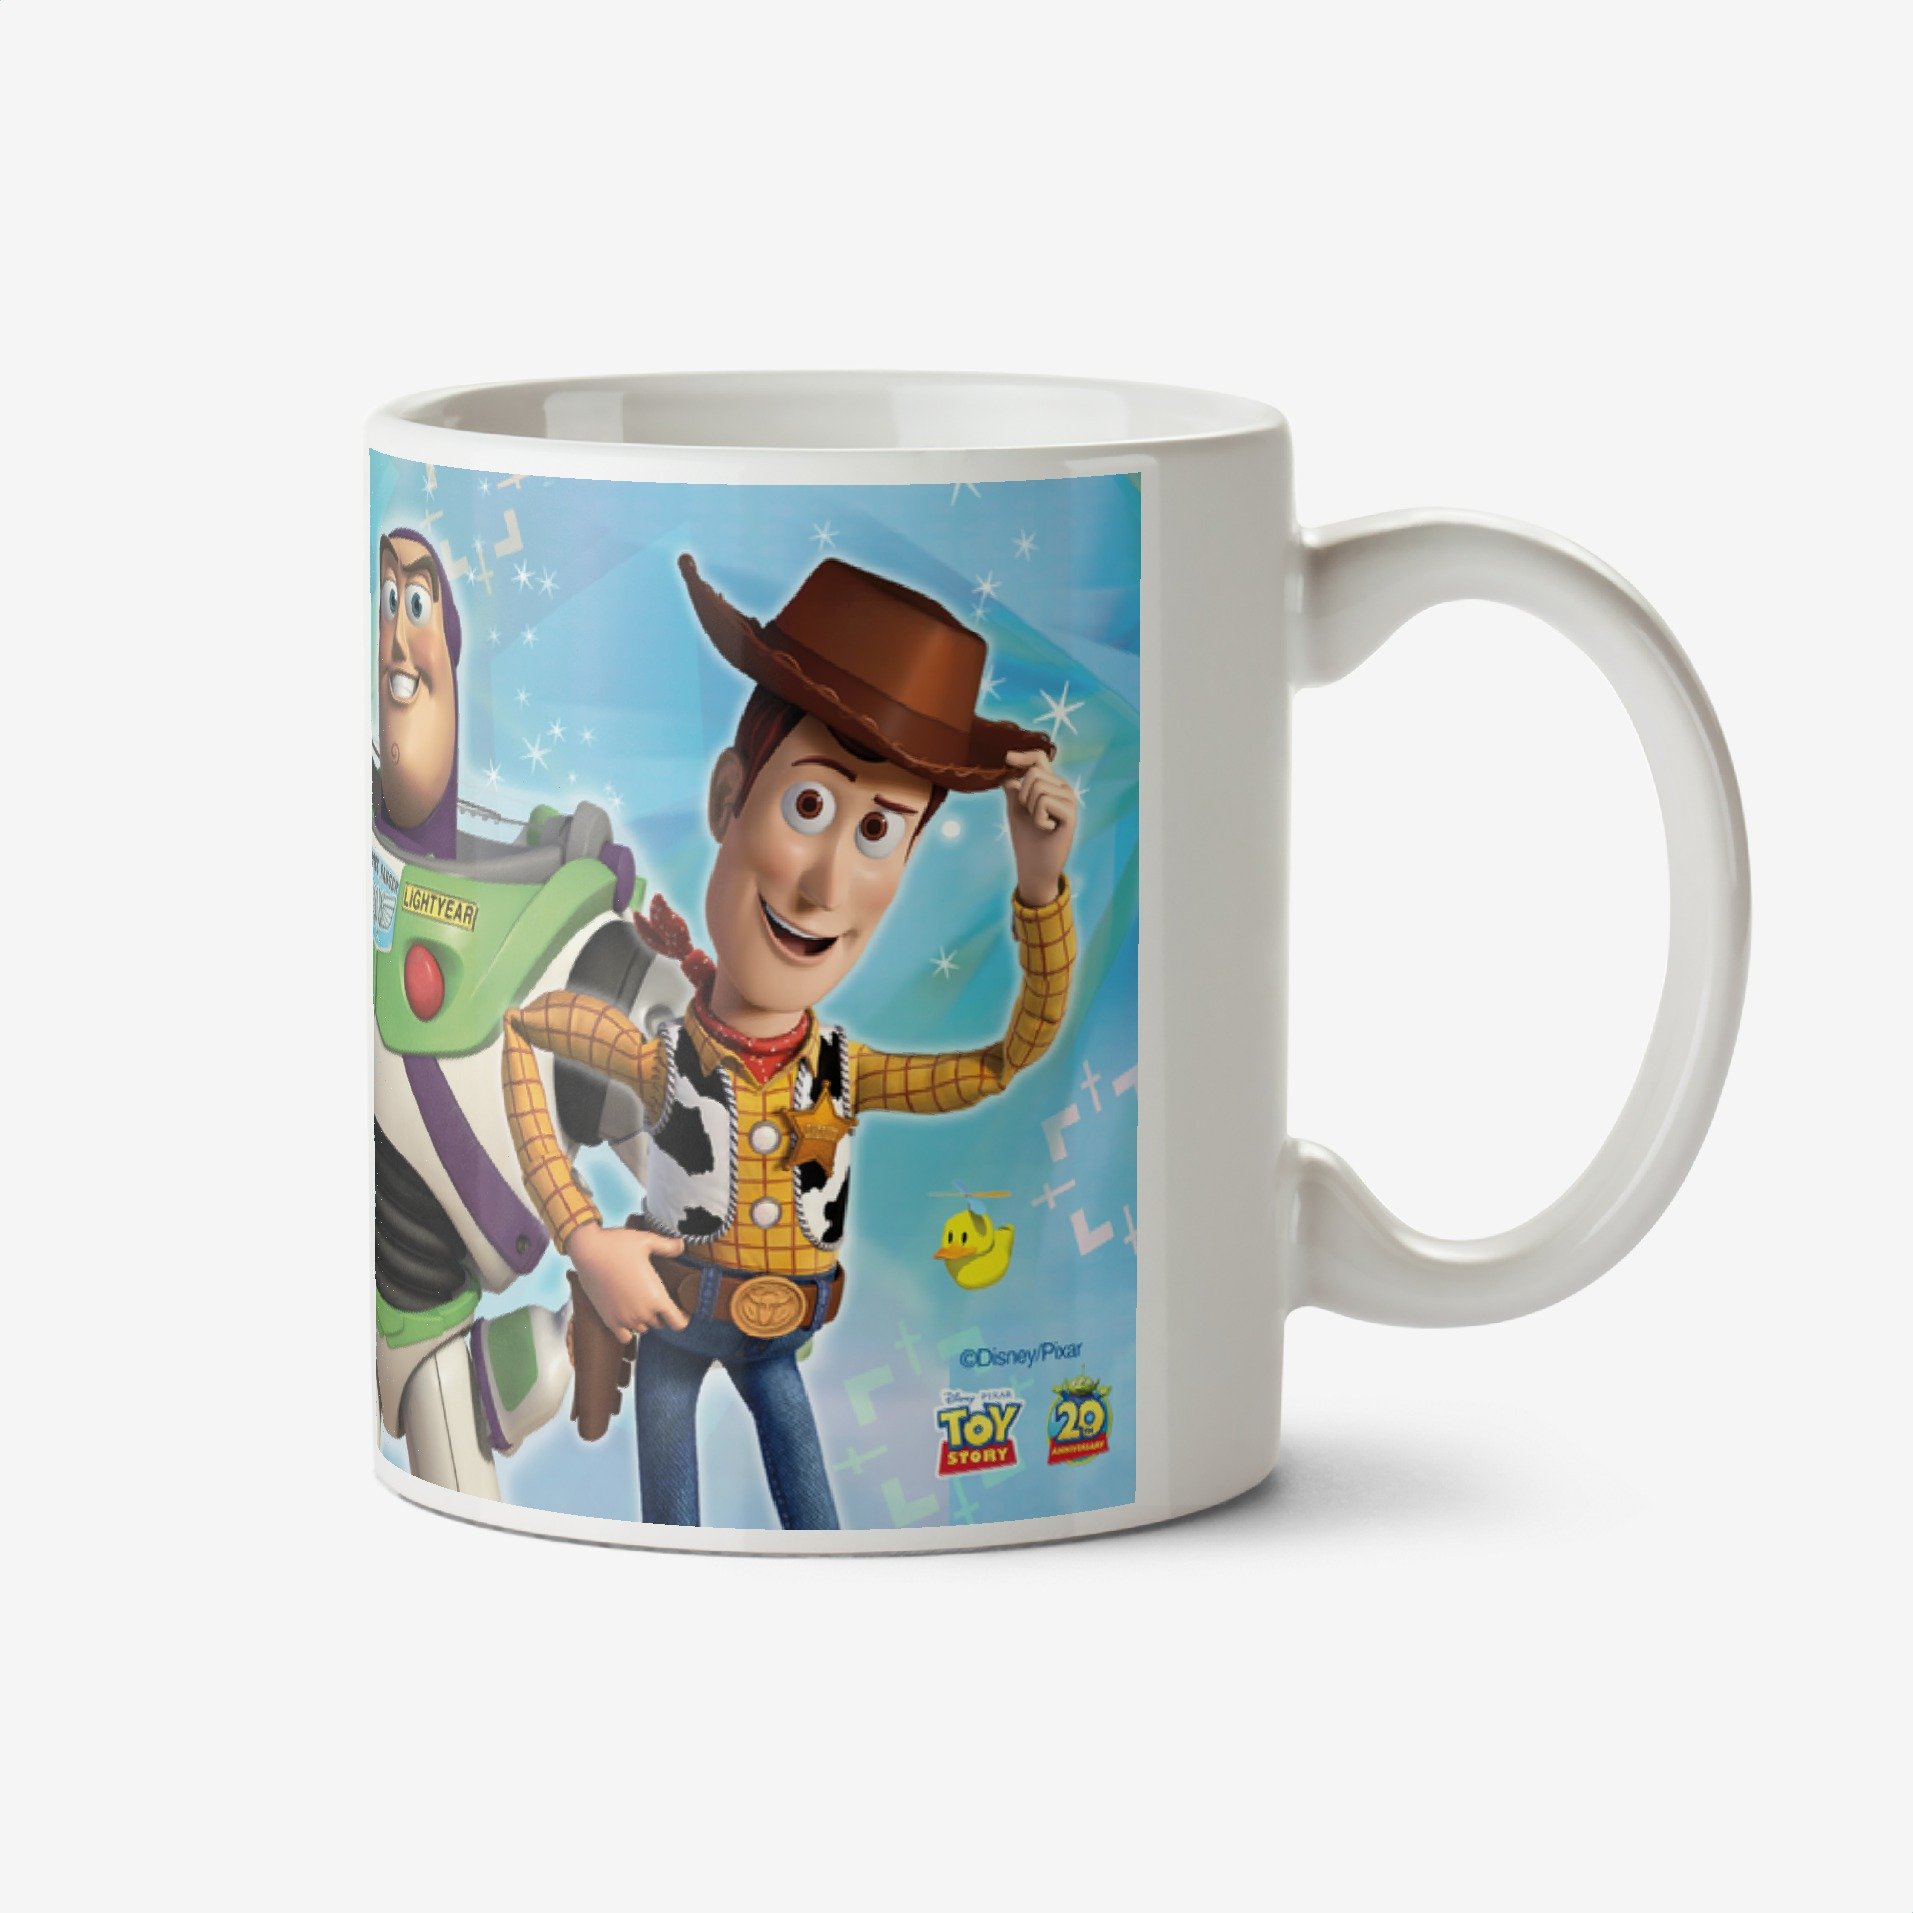 Toy Story Space Deputy Photo Upload Mug Ceramic Mug